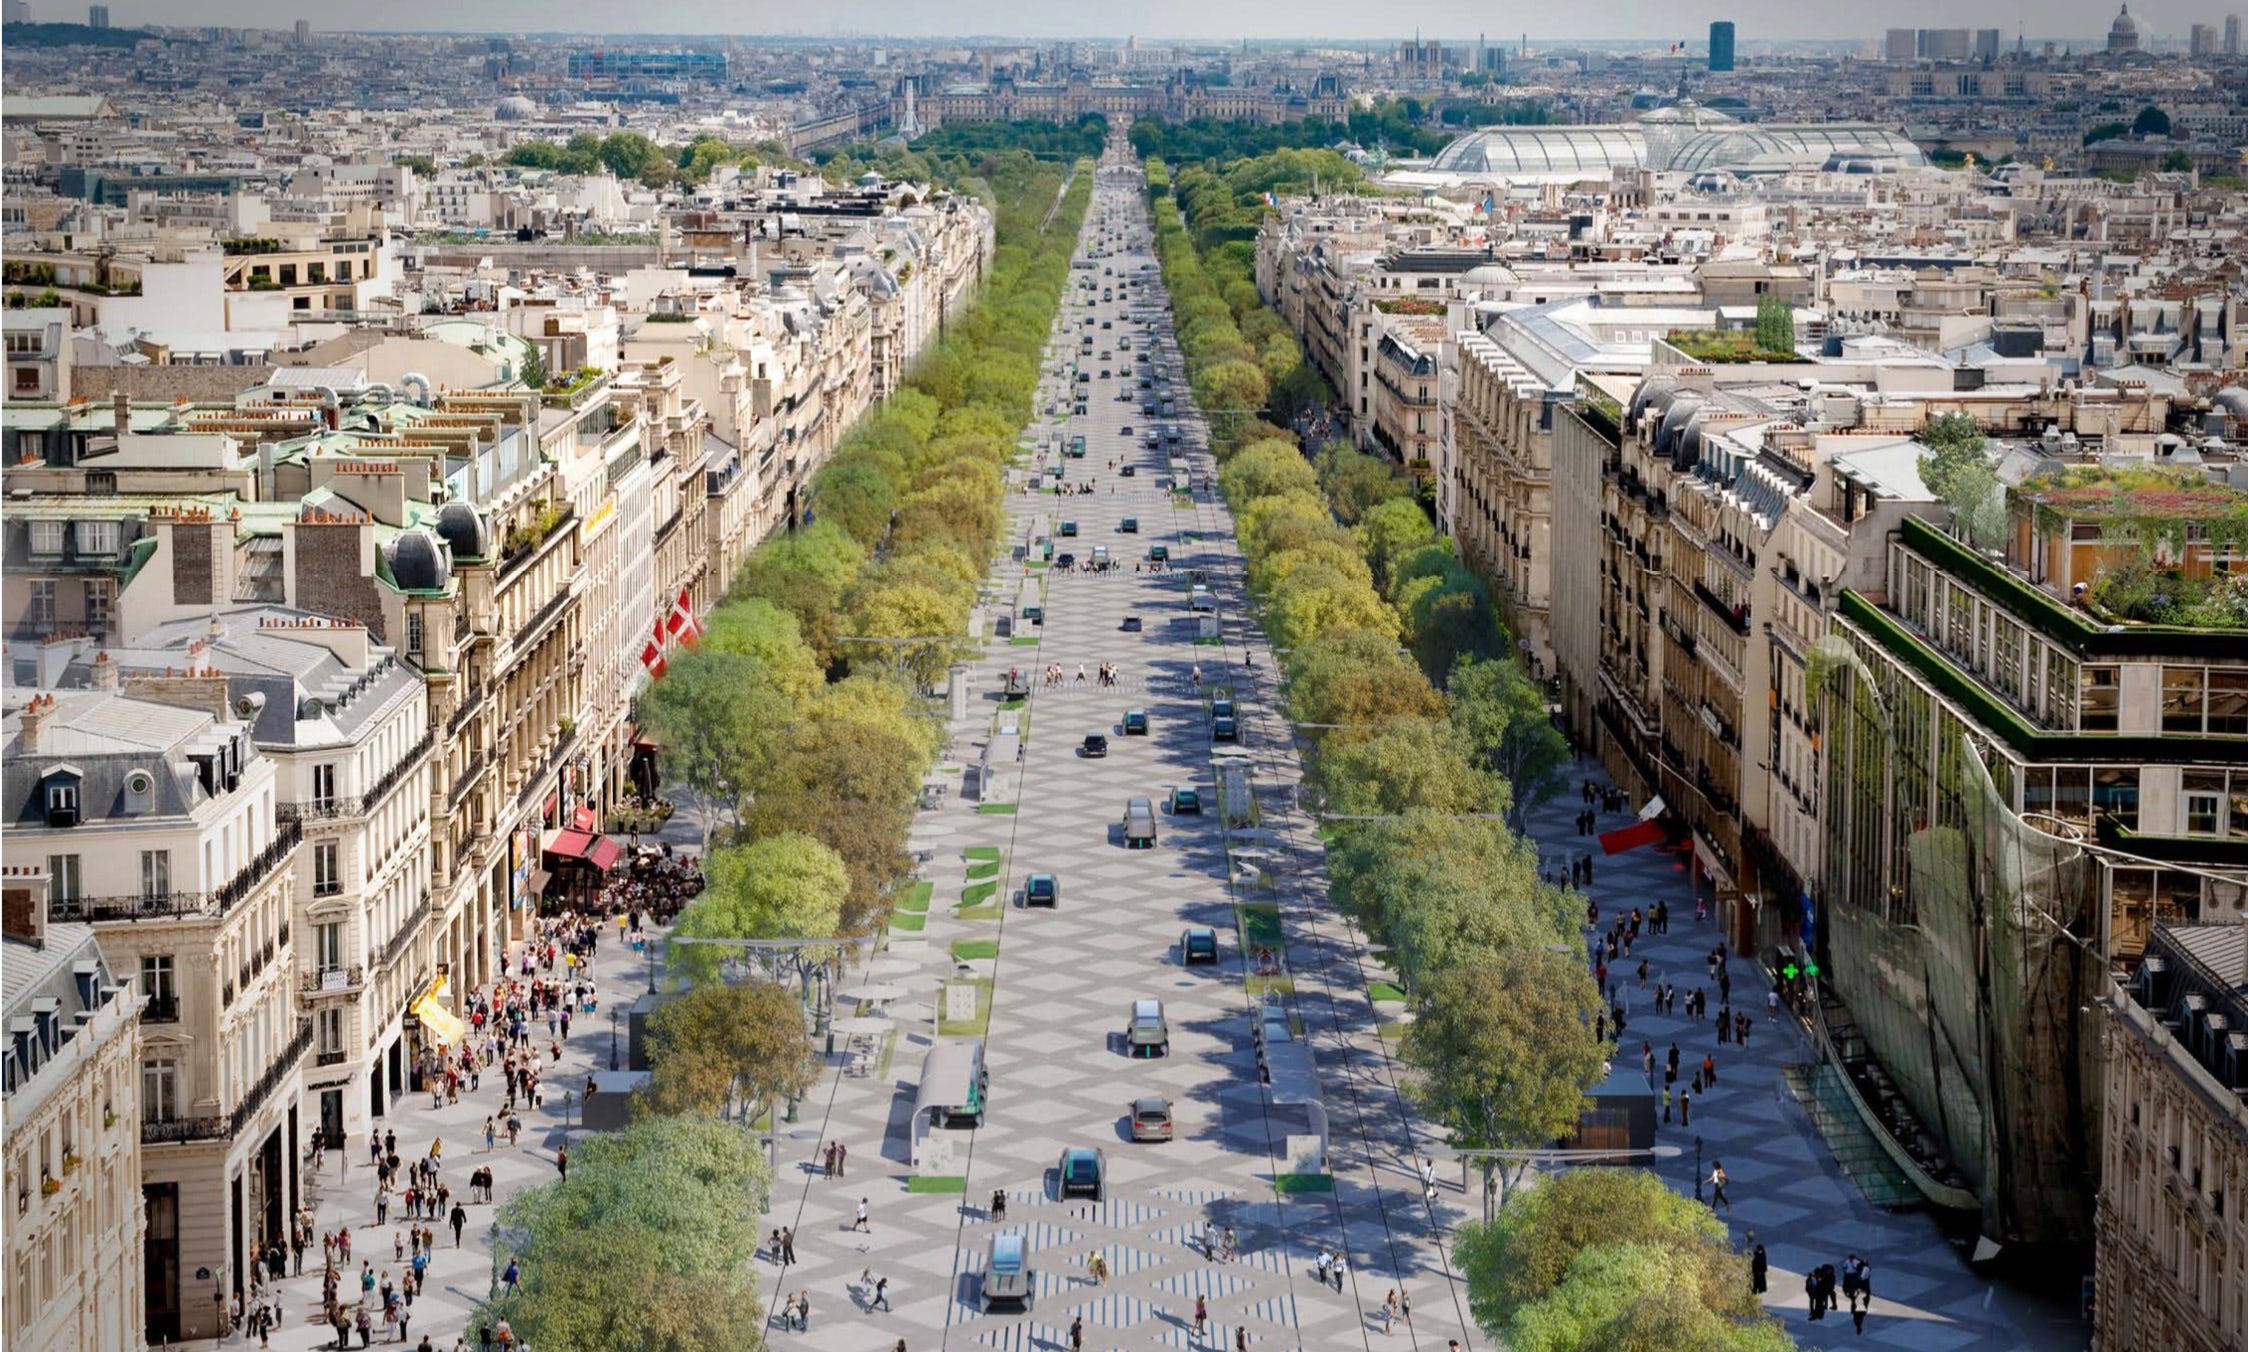 Champs Elysees - Champs Elysees in Paris - Avenue Montaigne